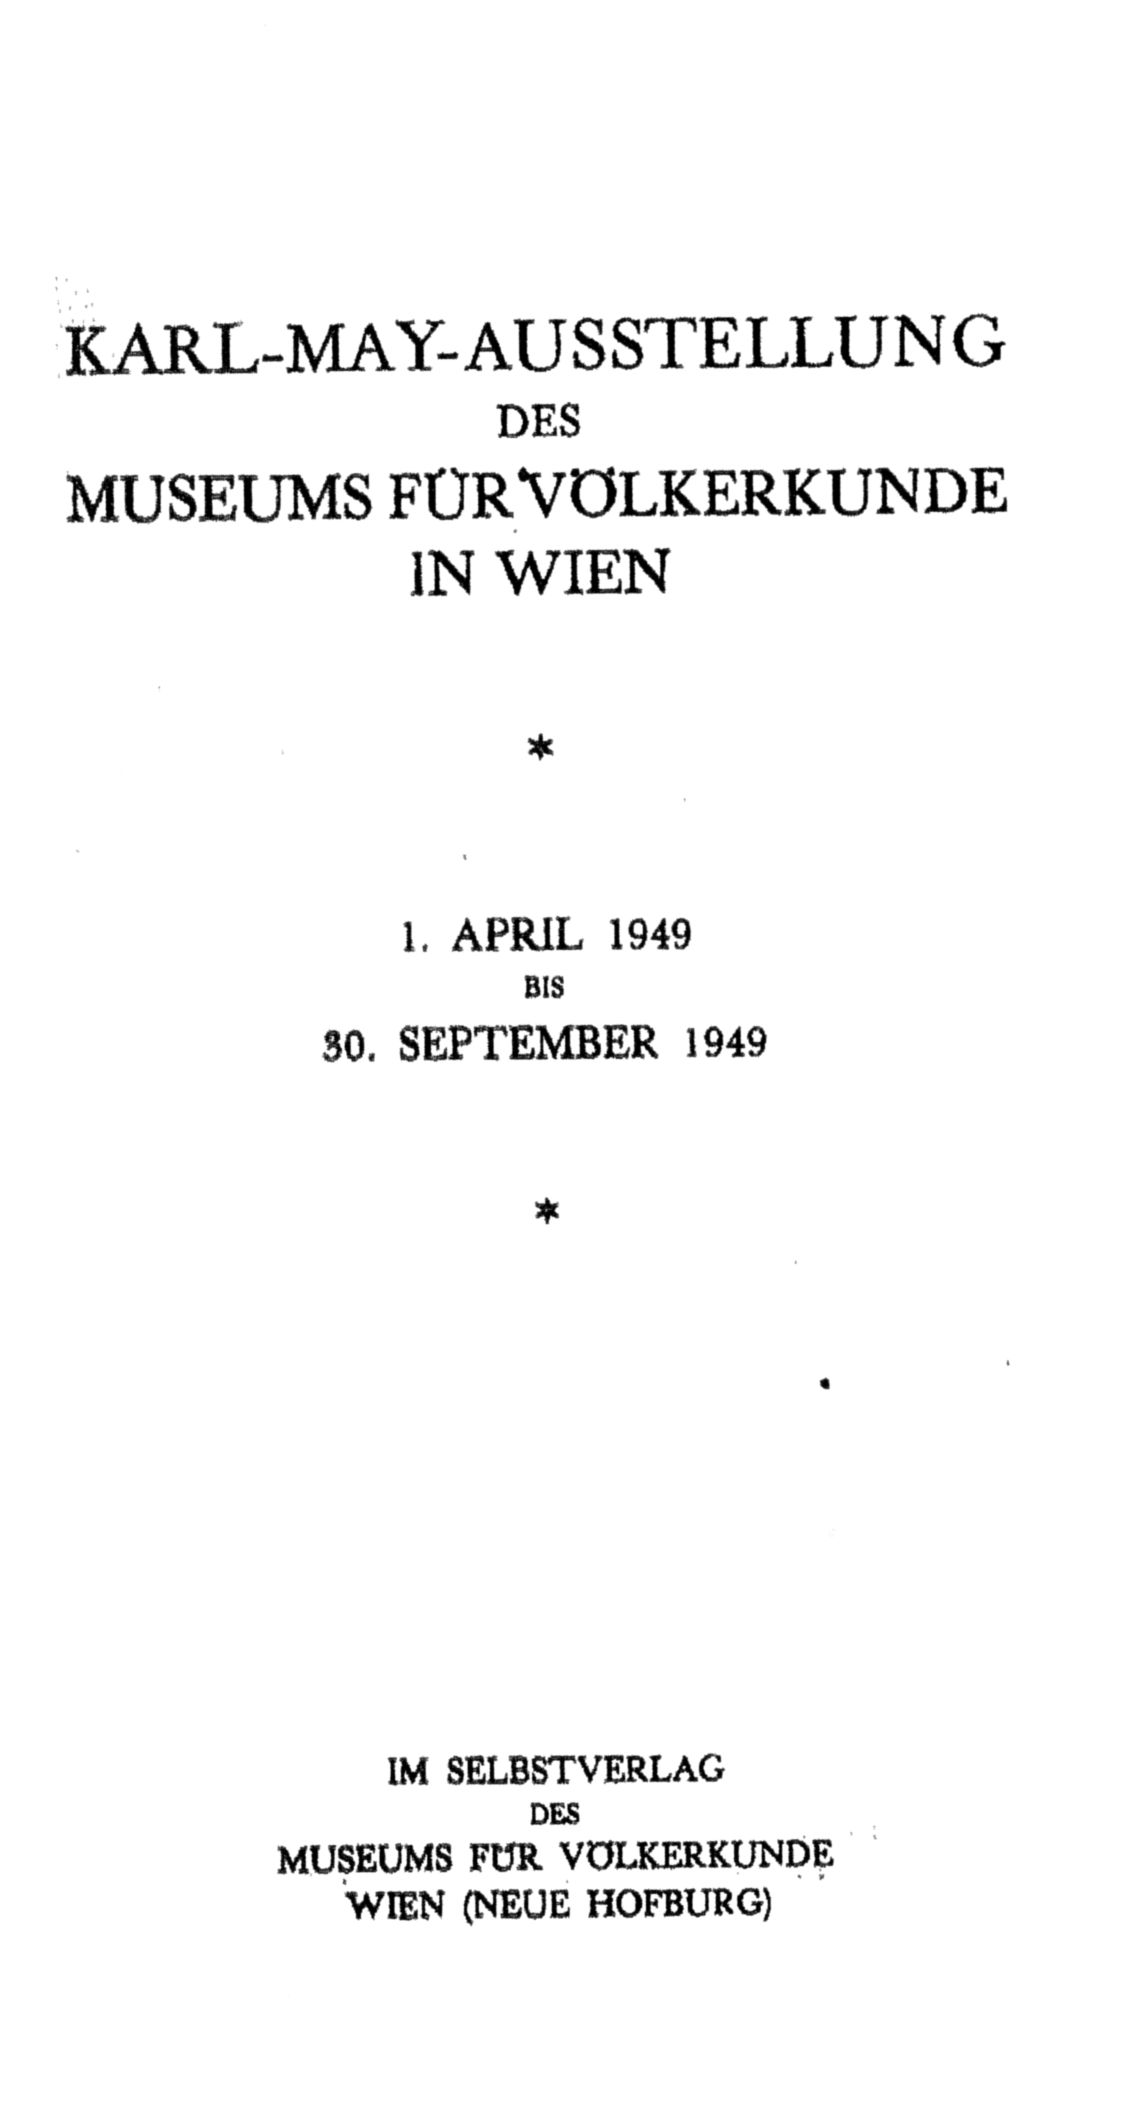 Katalog Karl-May-Austellung Wien 1949.jpg